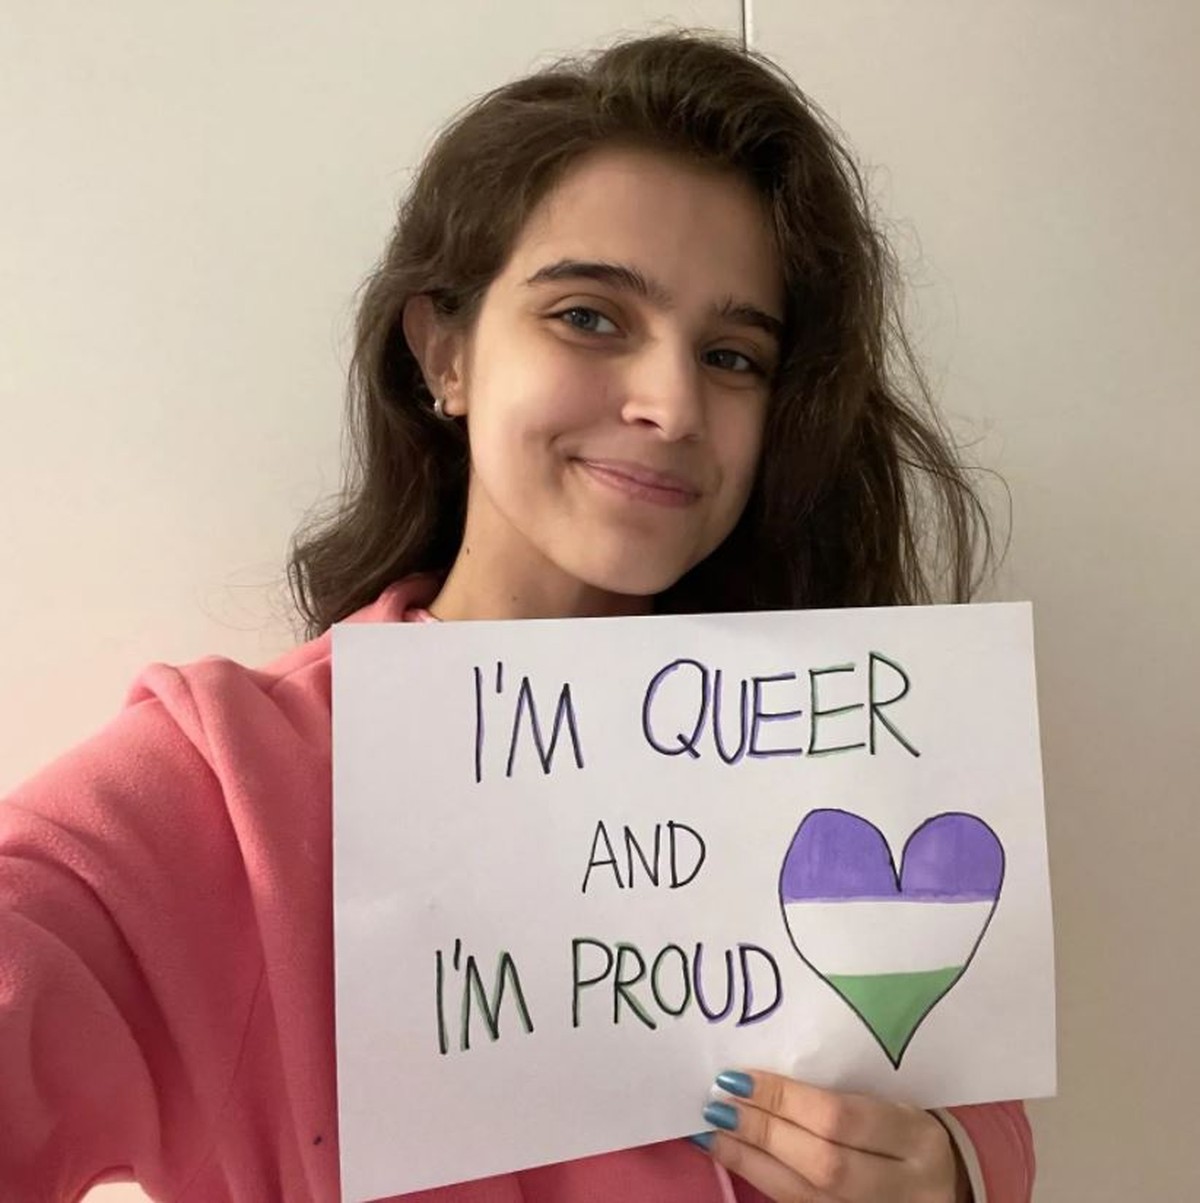 Hija del presentador Theo Schmidt celebra el Día del Orgullo LGBTQIA+ online: ‘Soy gay y orgullosa’ |  diversidad